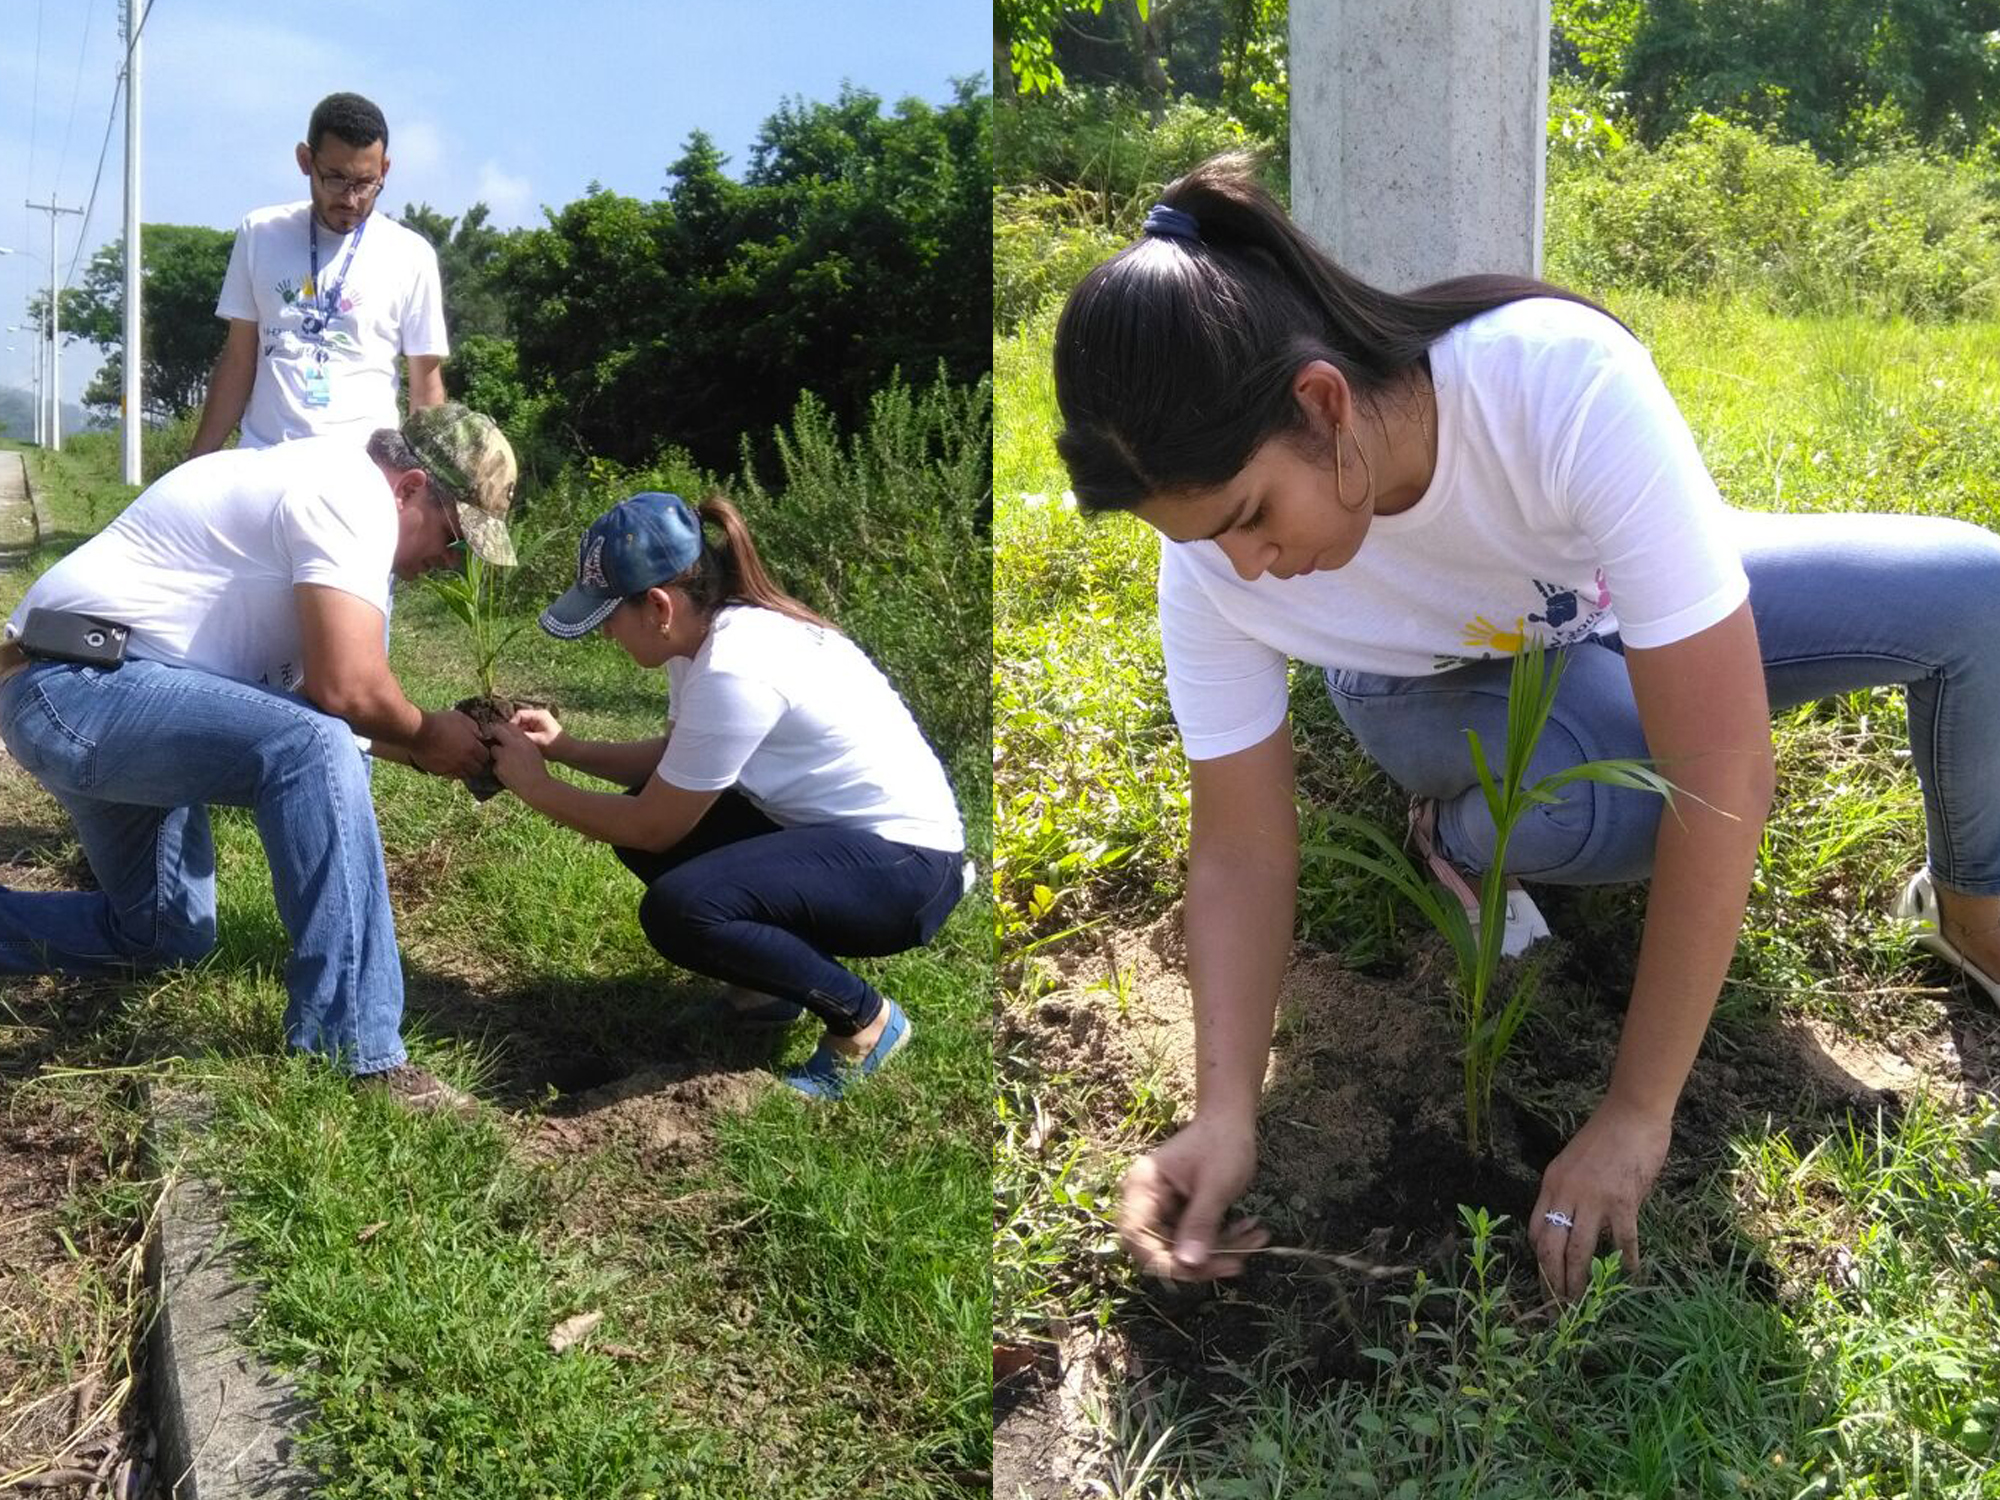 Voluntariado de Grupo Kattan, División Inmobiliaria (INHDELVA), reforesta proyecto Bello Horizonte